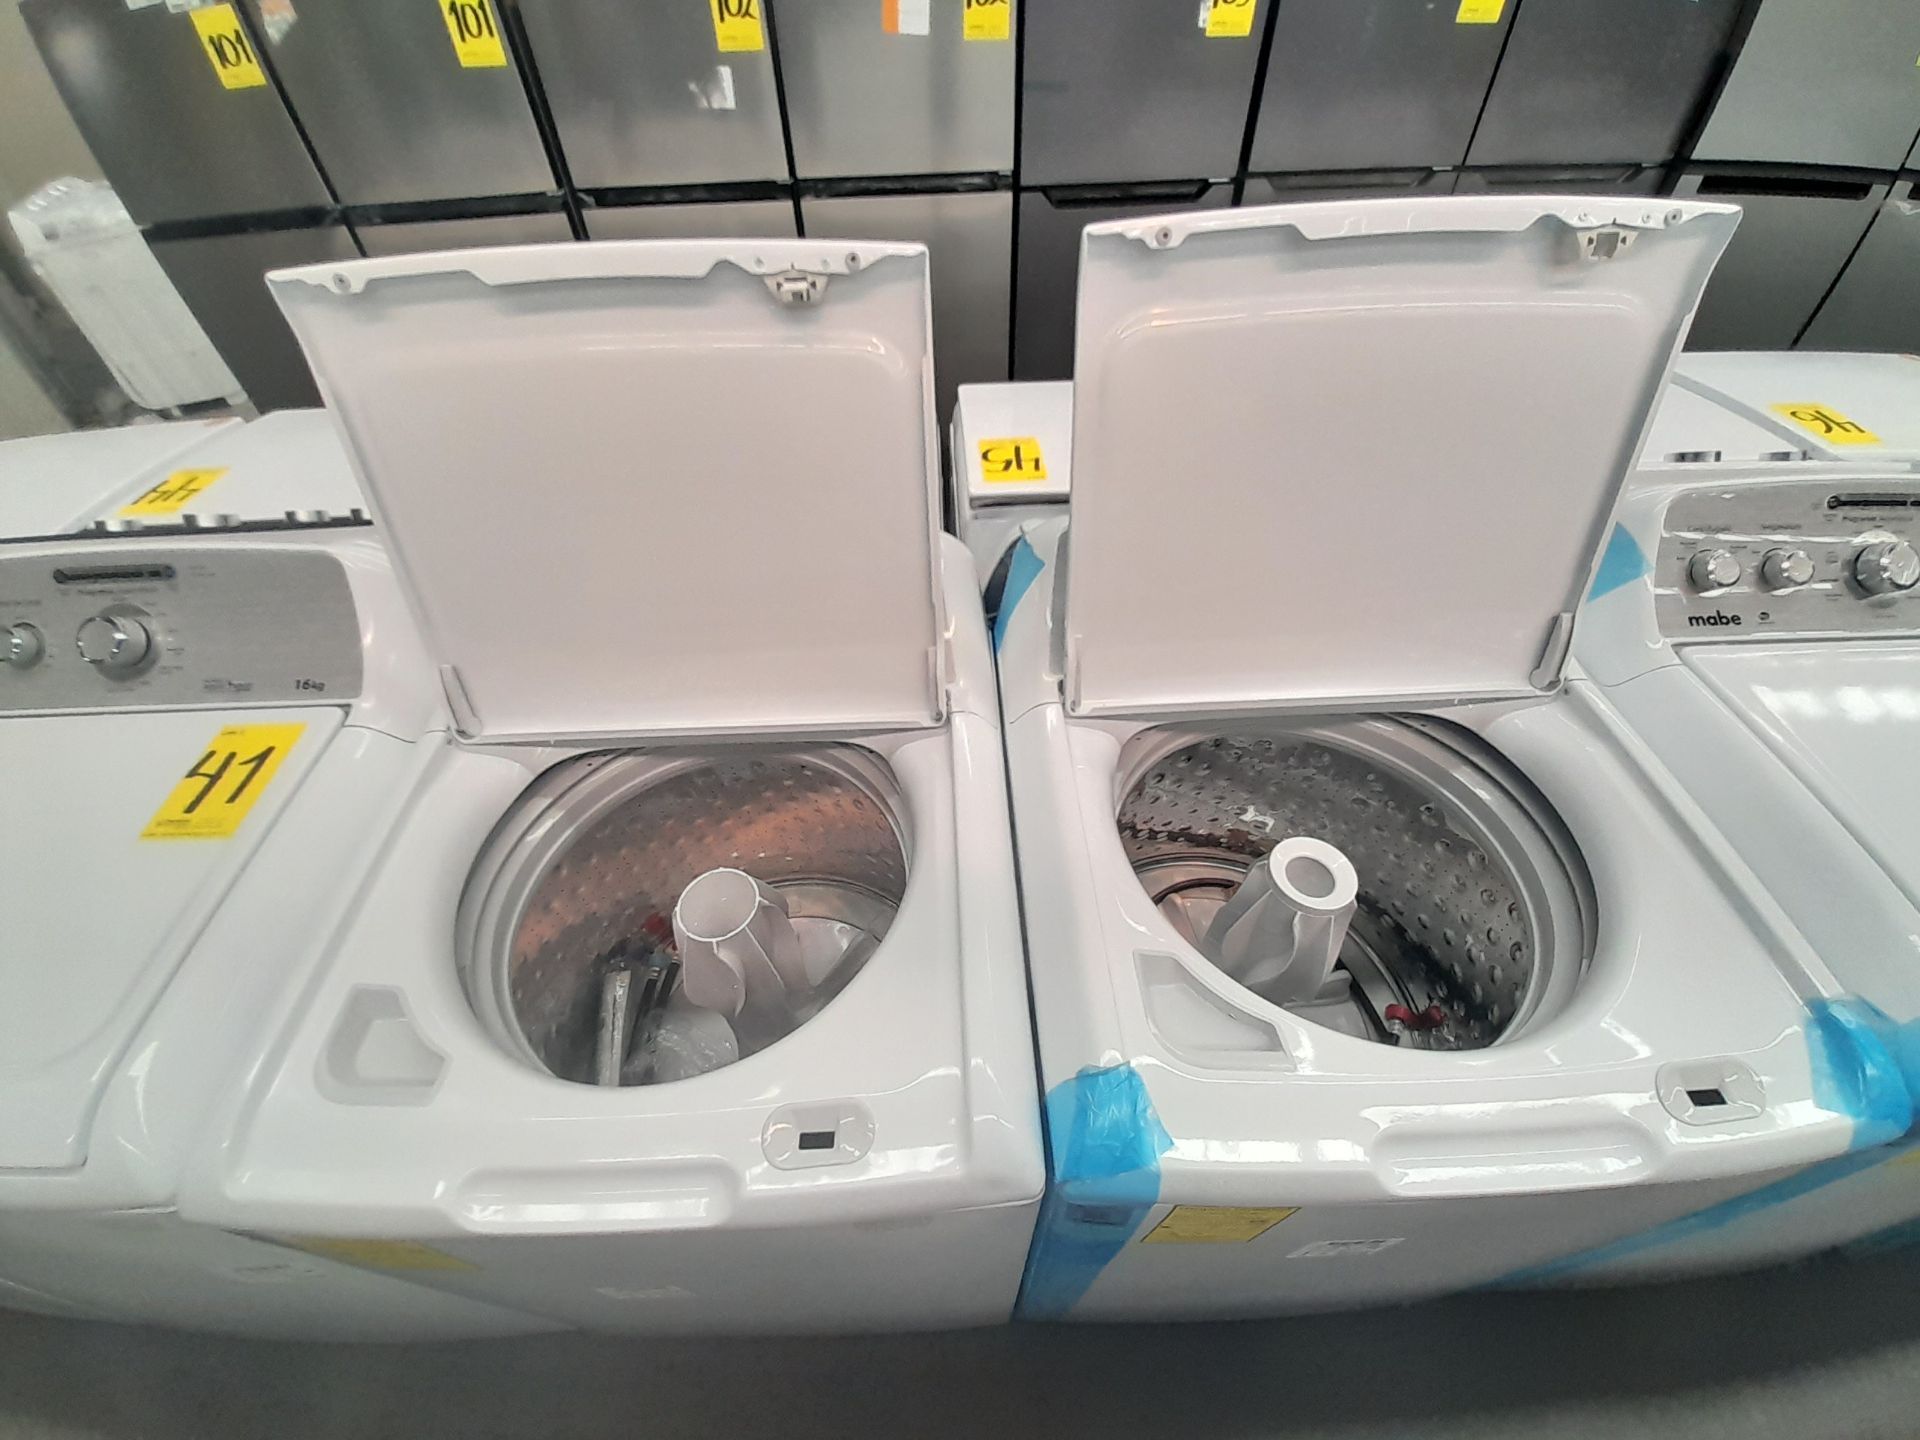 Lote de 2 lavadoras contiene: 1 lavadora de 22 KG, Marca MABE, Modelo LMA72215CBAB02, Serie S02700, - Image 5 of 6